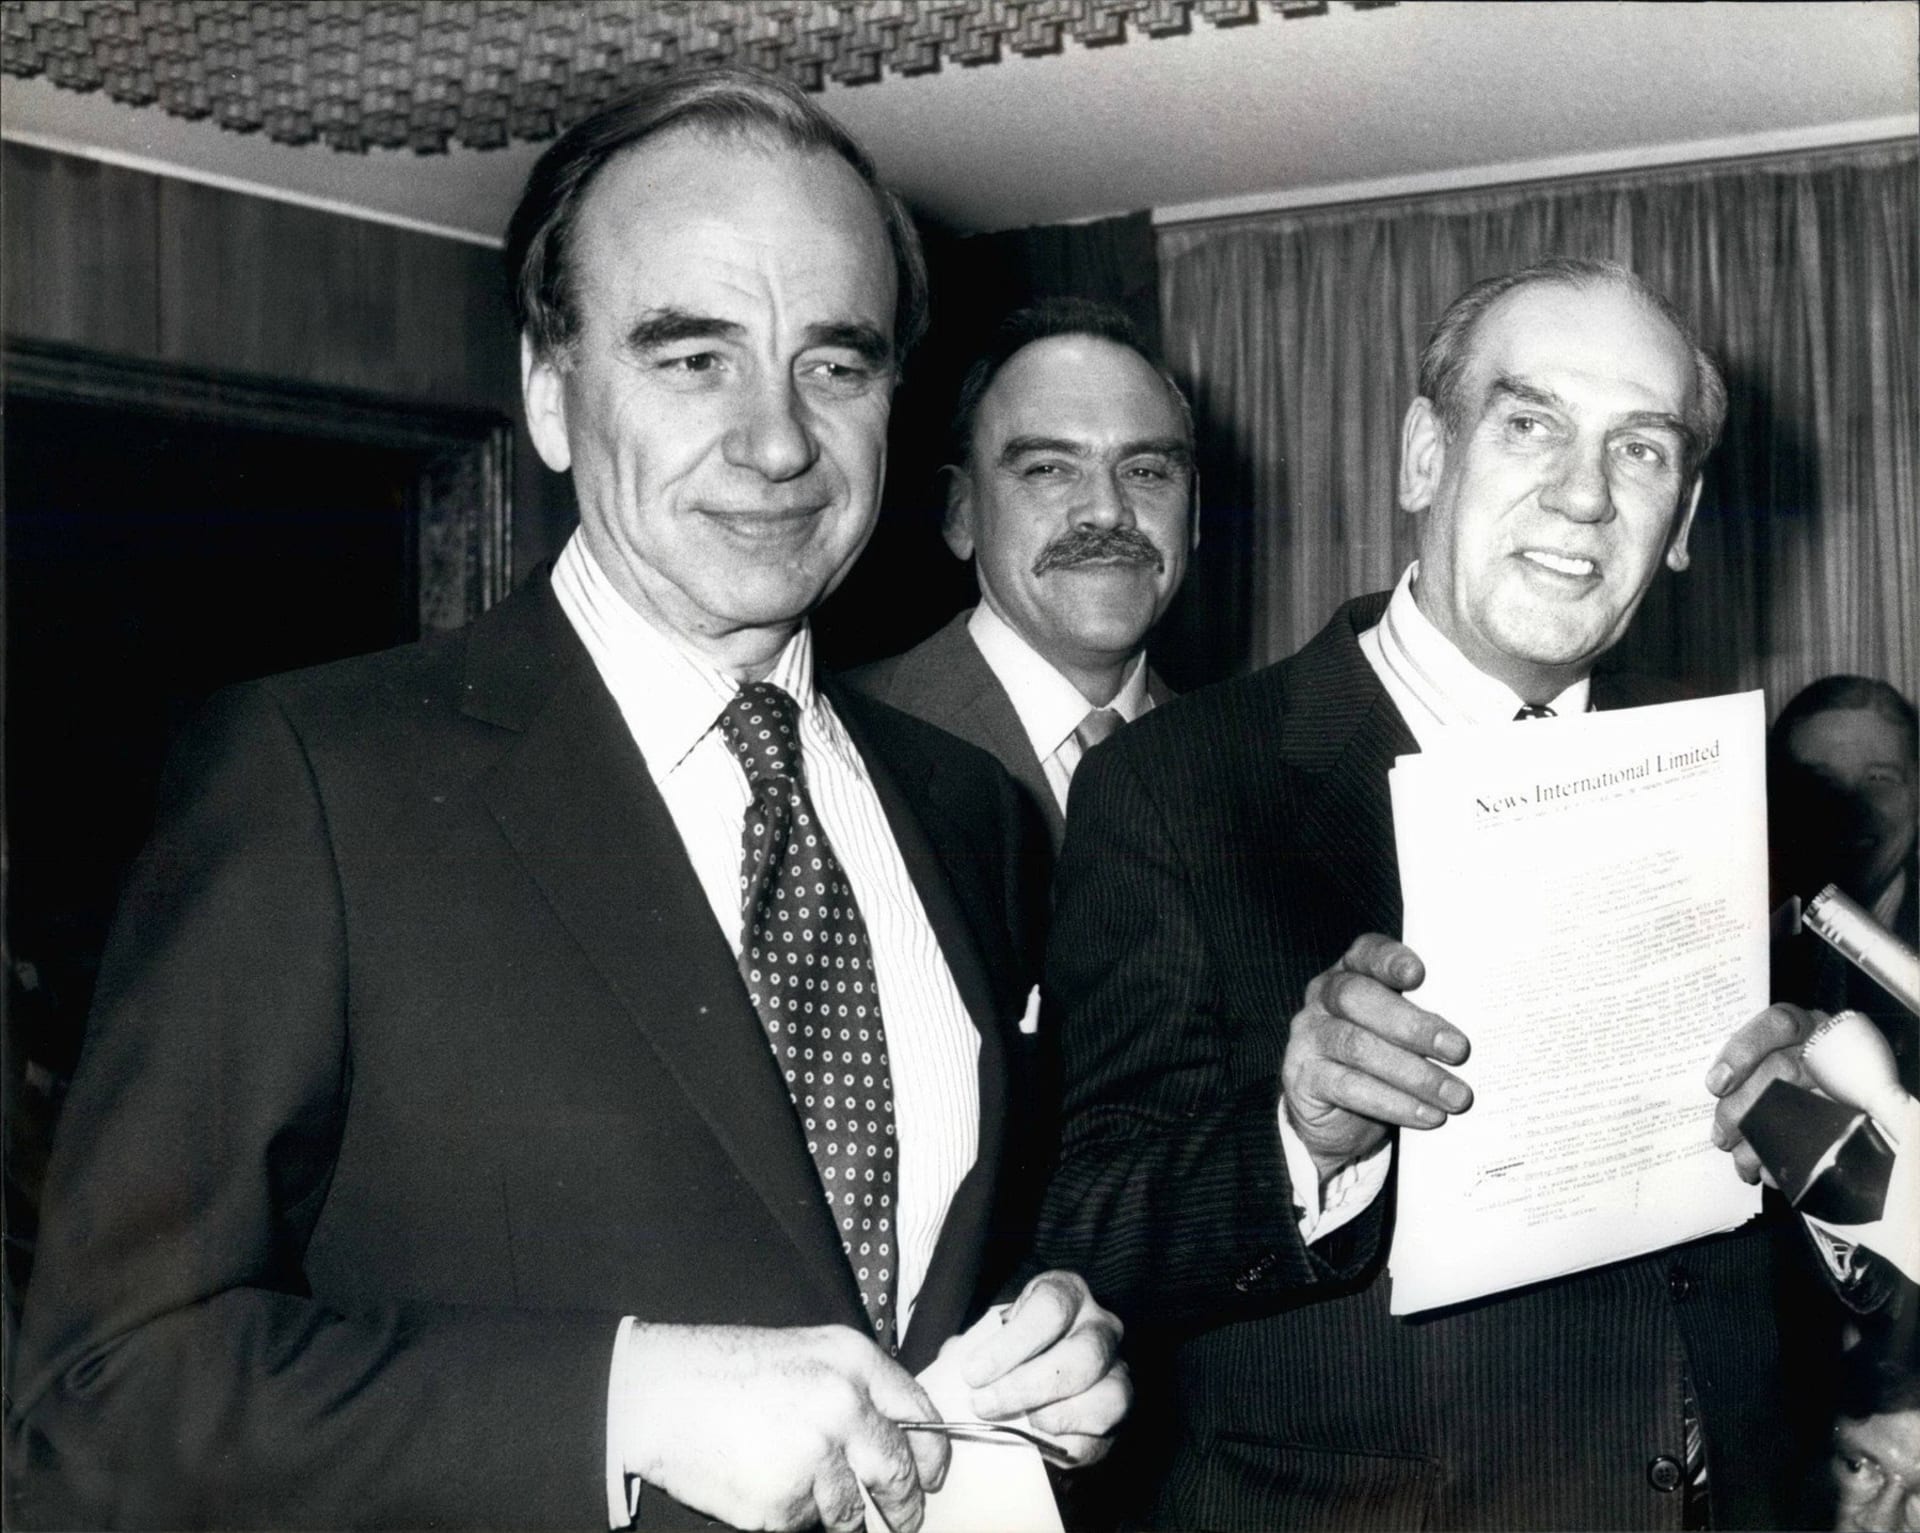 V roce 1981 koupilo Murdochovo vydavatelství listy The Times a Sunday Times. Rupert Murdoch na snímku vlevo.